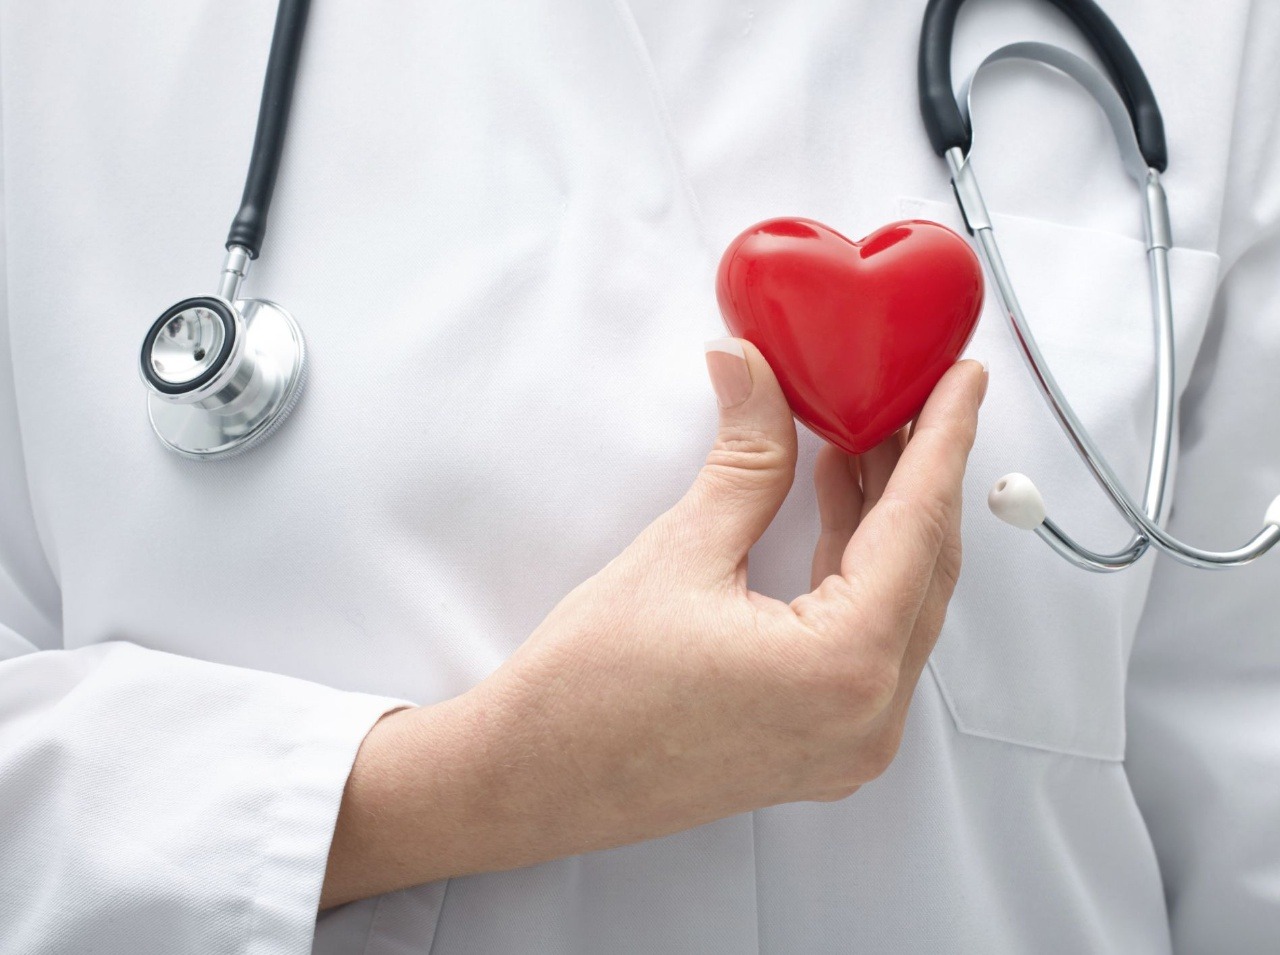 Srdcové ochorenia nás najviac zabíjajú!